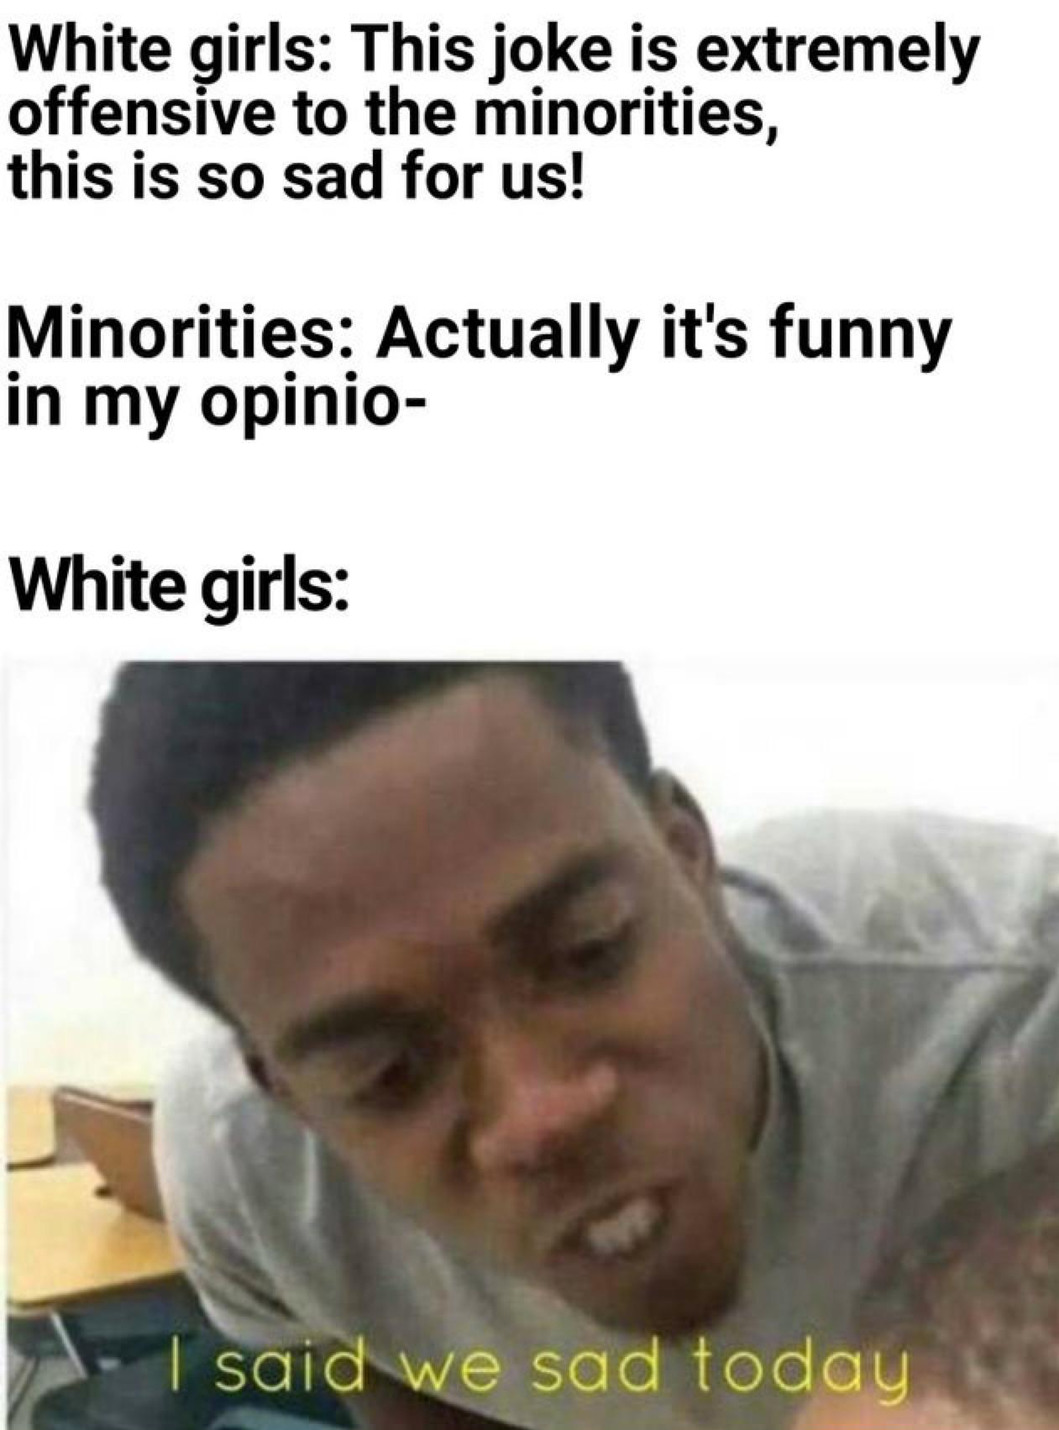 14yo white girls be like - meme